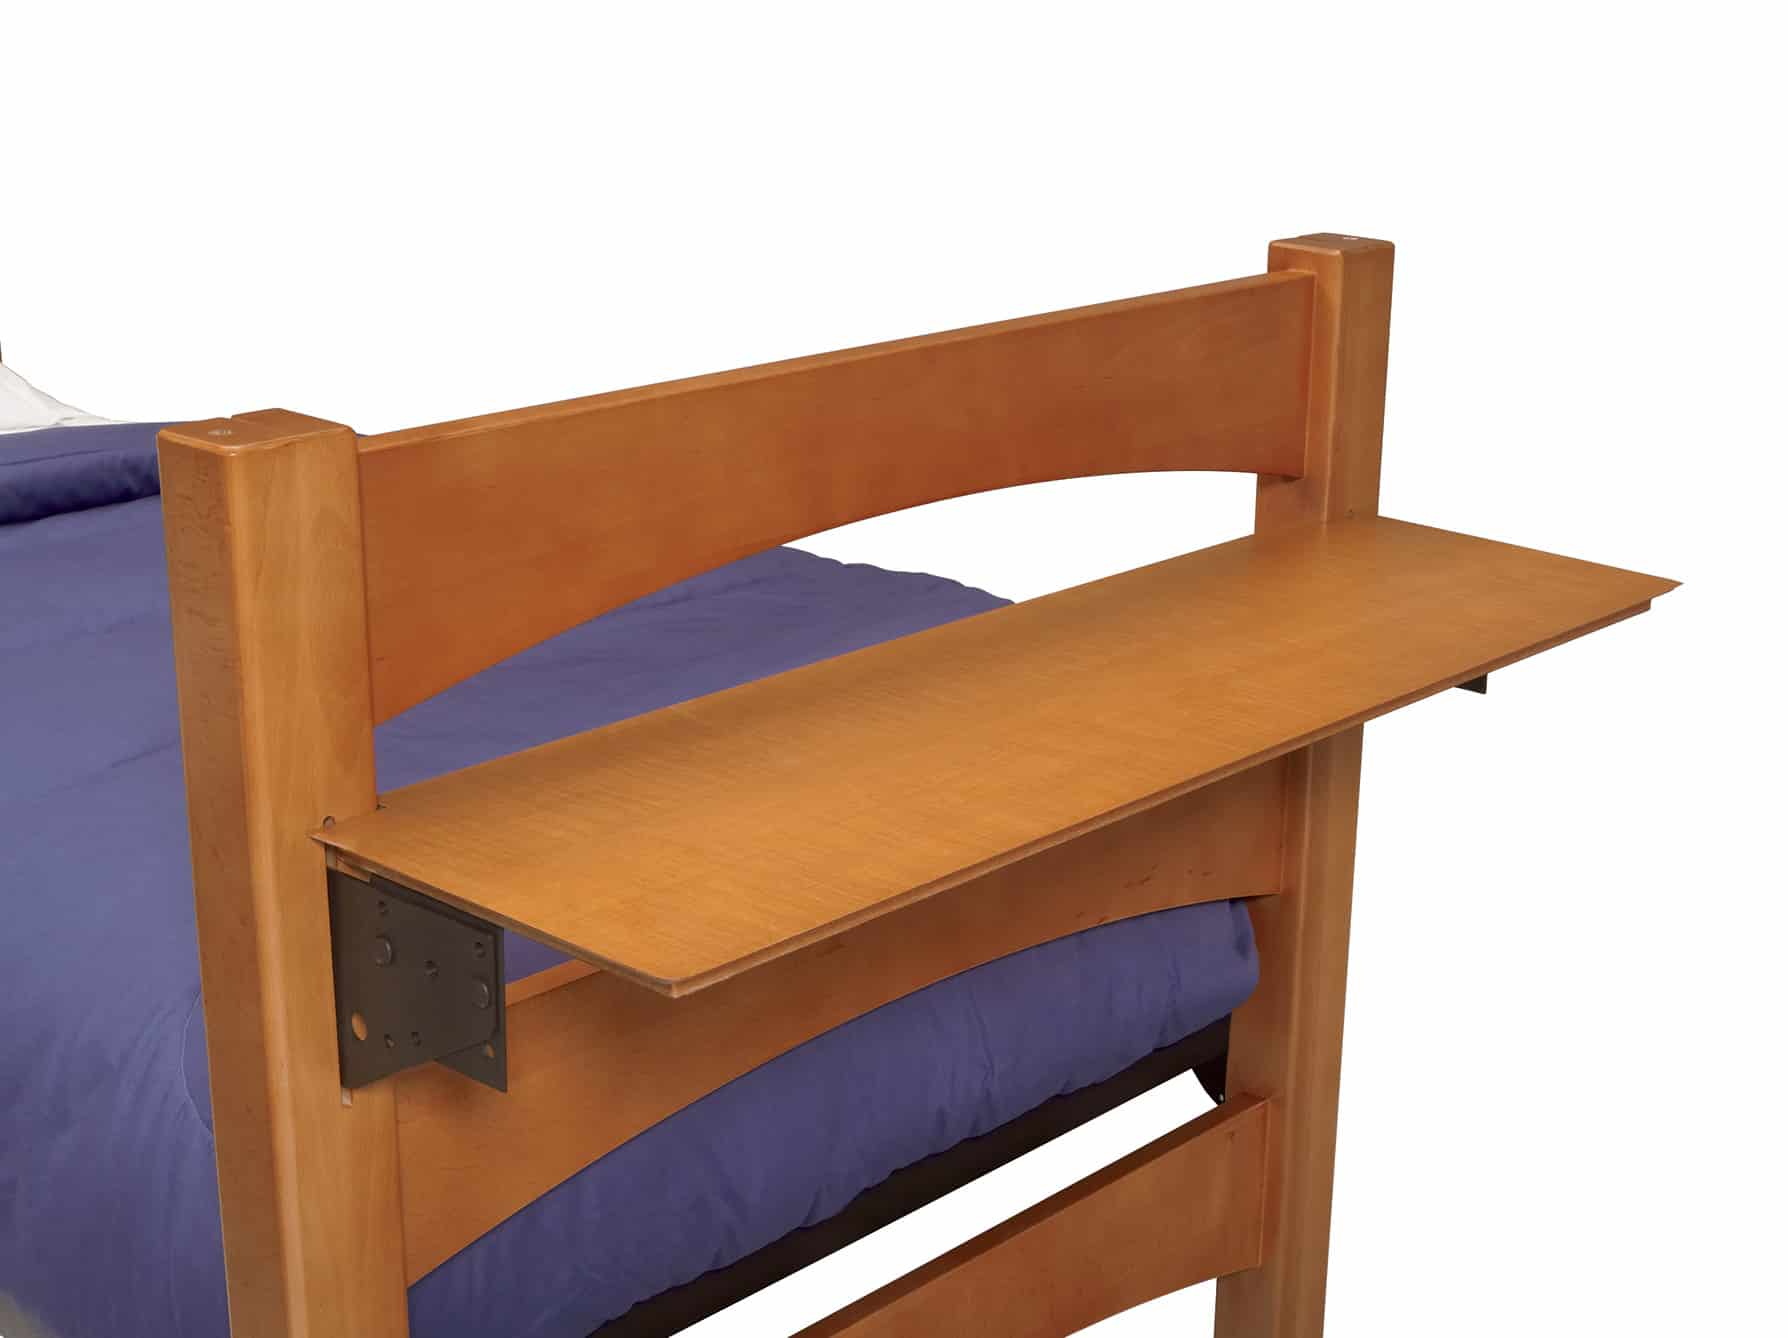 Beechwood Bed-Mounted Surfaces, Shelf